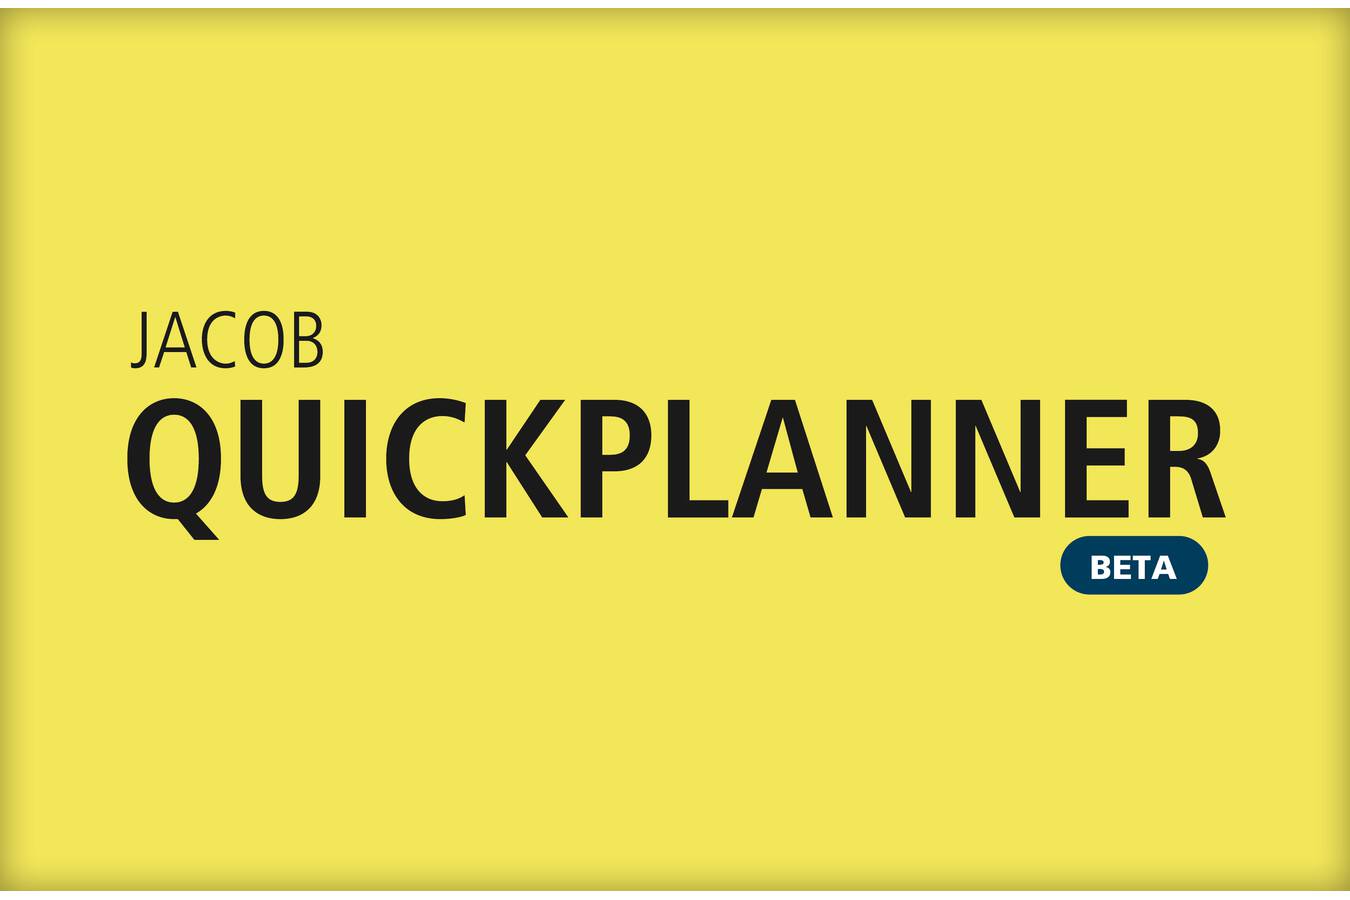 JACOB Quickplanner für die schnelle Projektkalkulation Sie benötigen eine schnelle Kostenschätzung für Ihre Projektplanung? JACOB Quickplanner bietet Projektkalkulation in nur zwei Schritten.